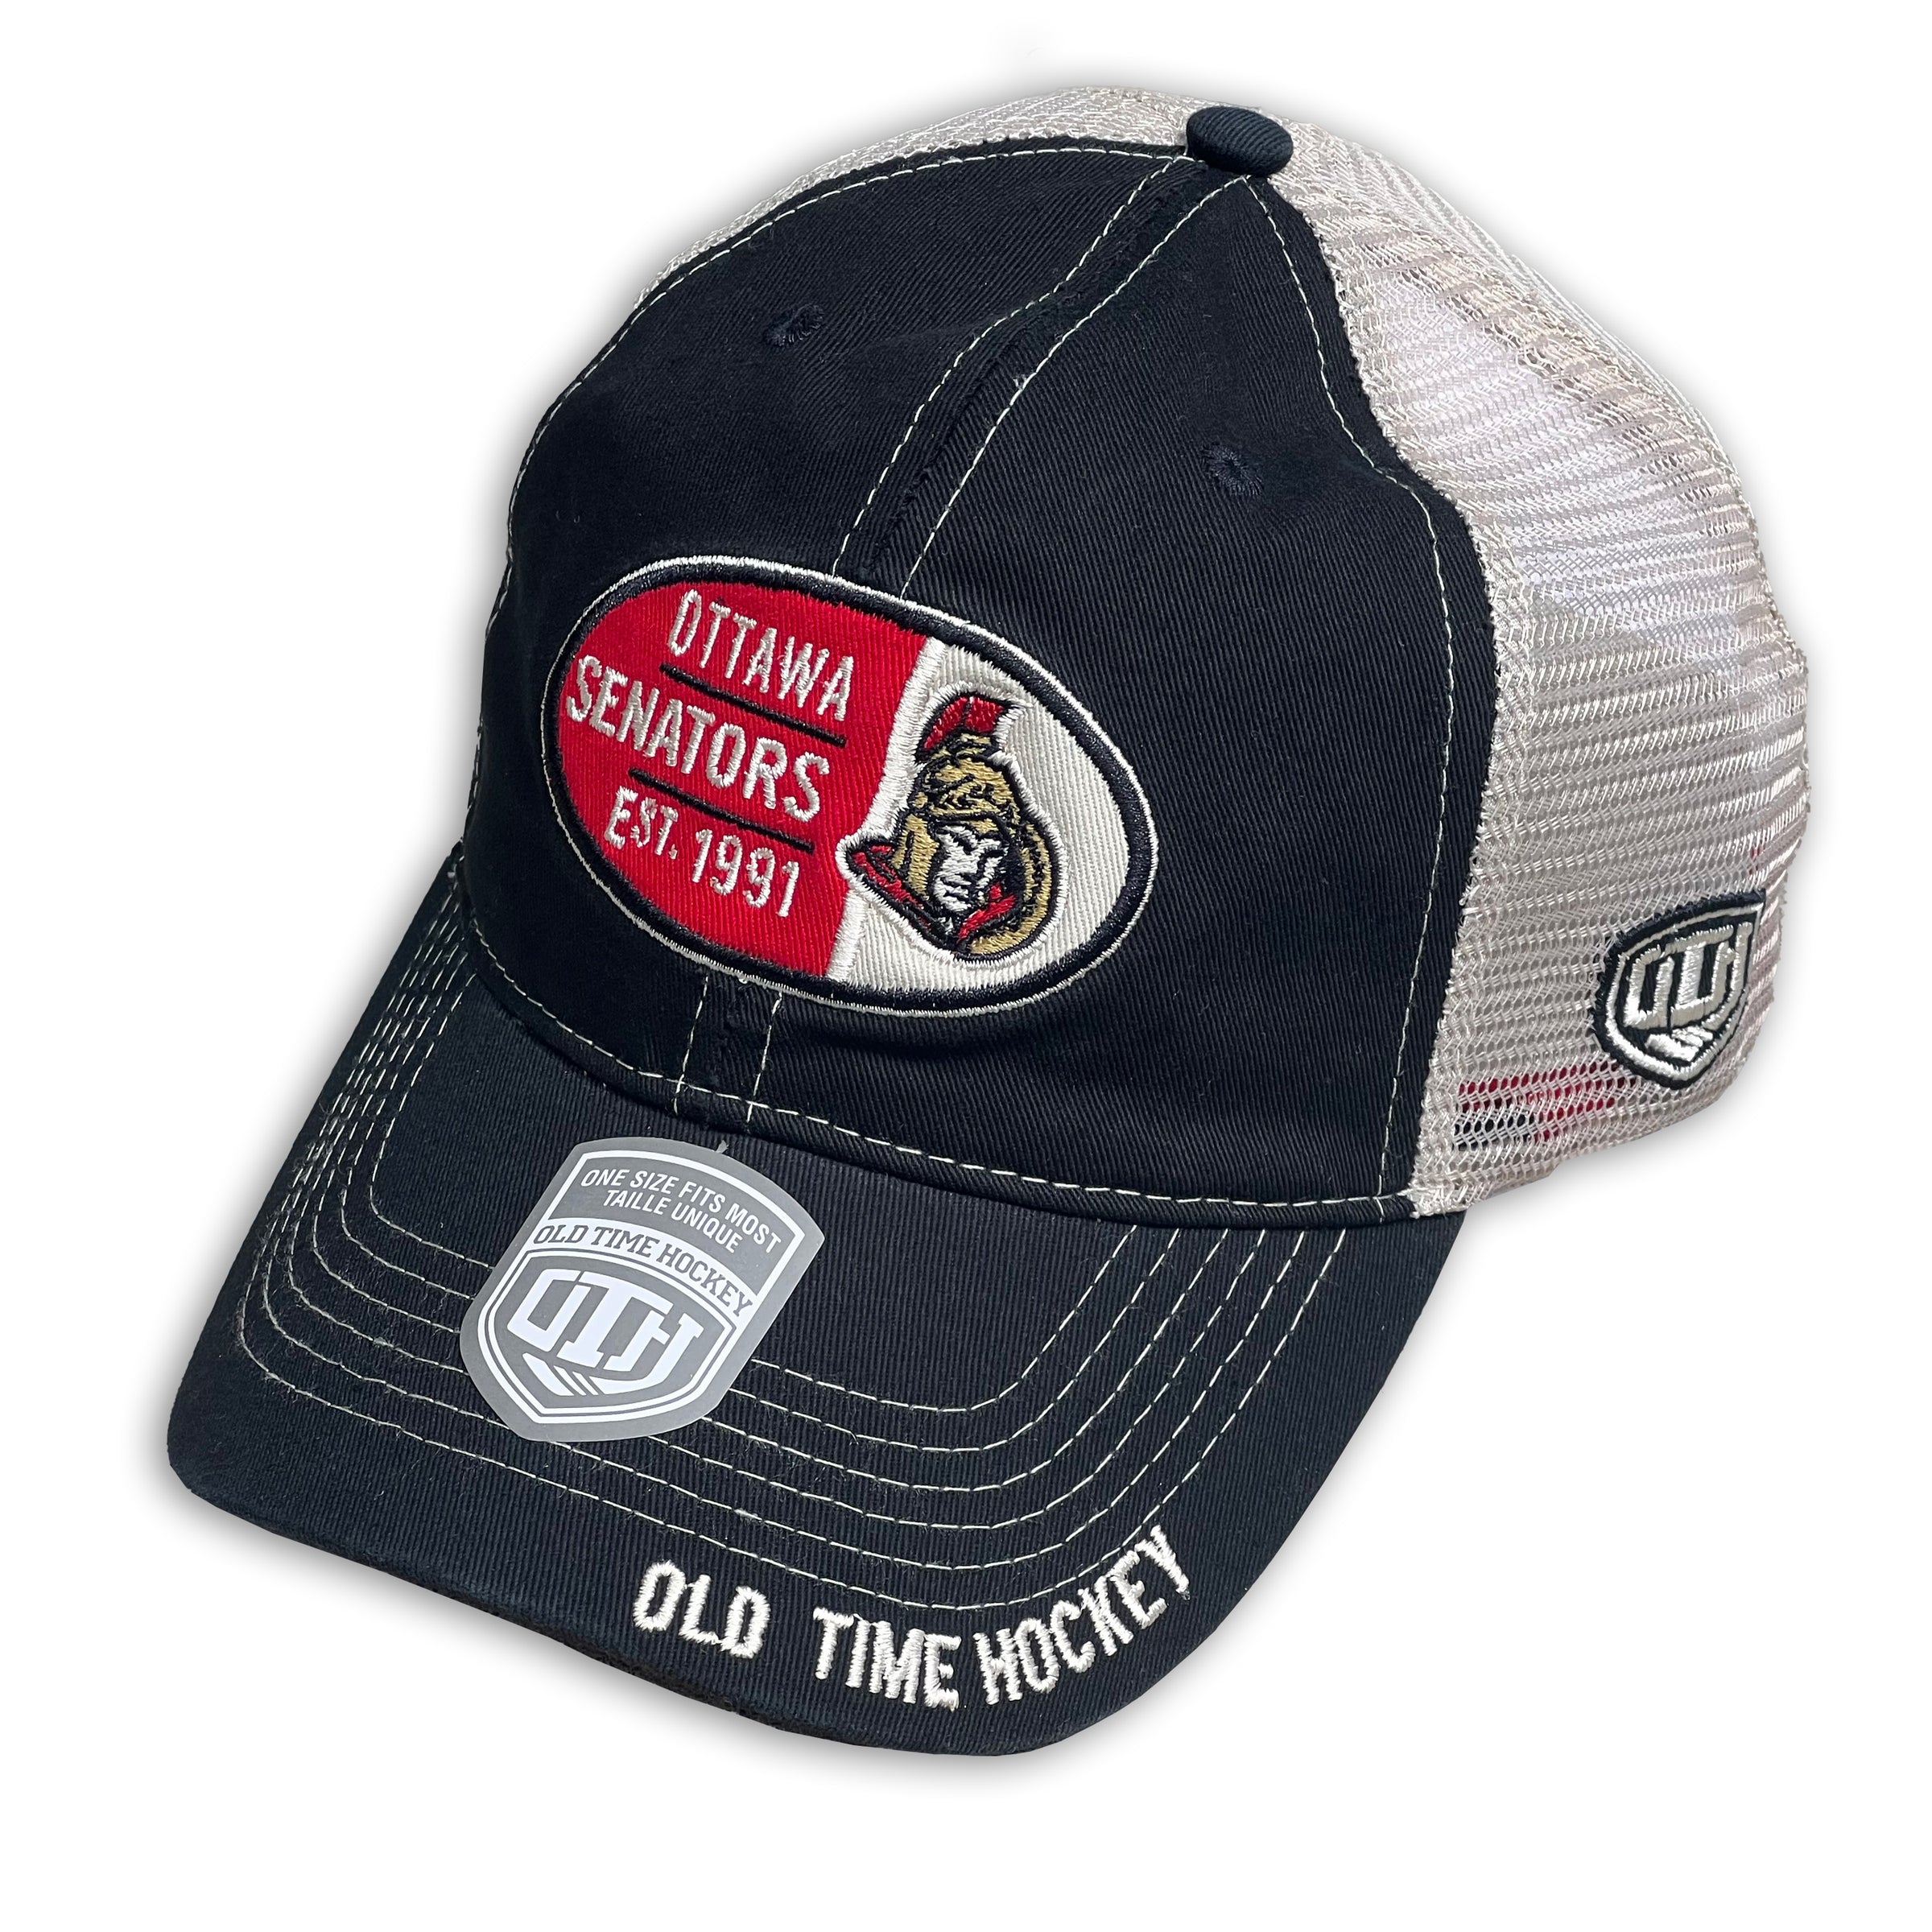 Ottawa Senators NHL trucker cap